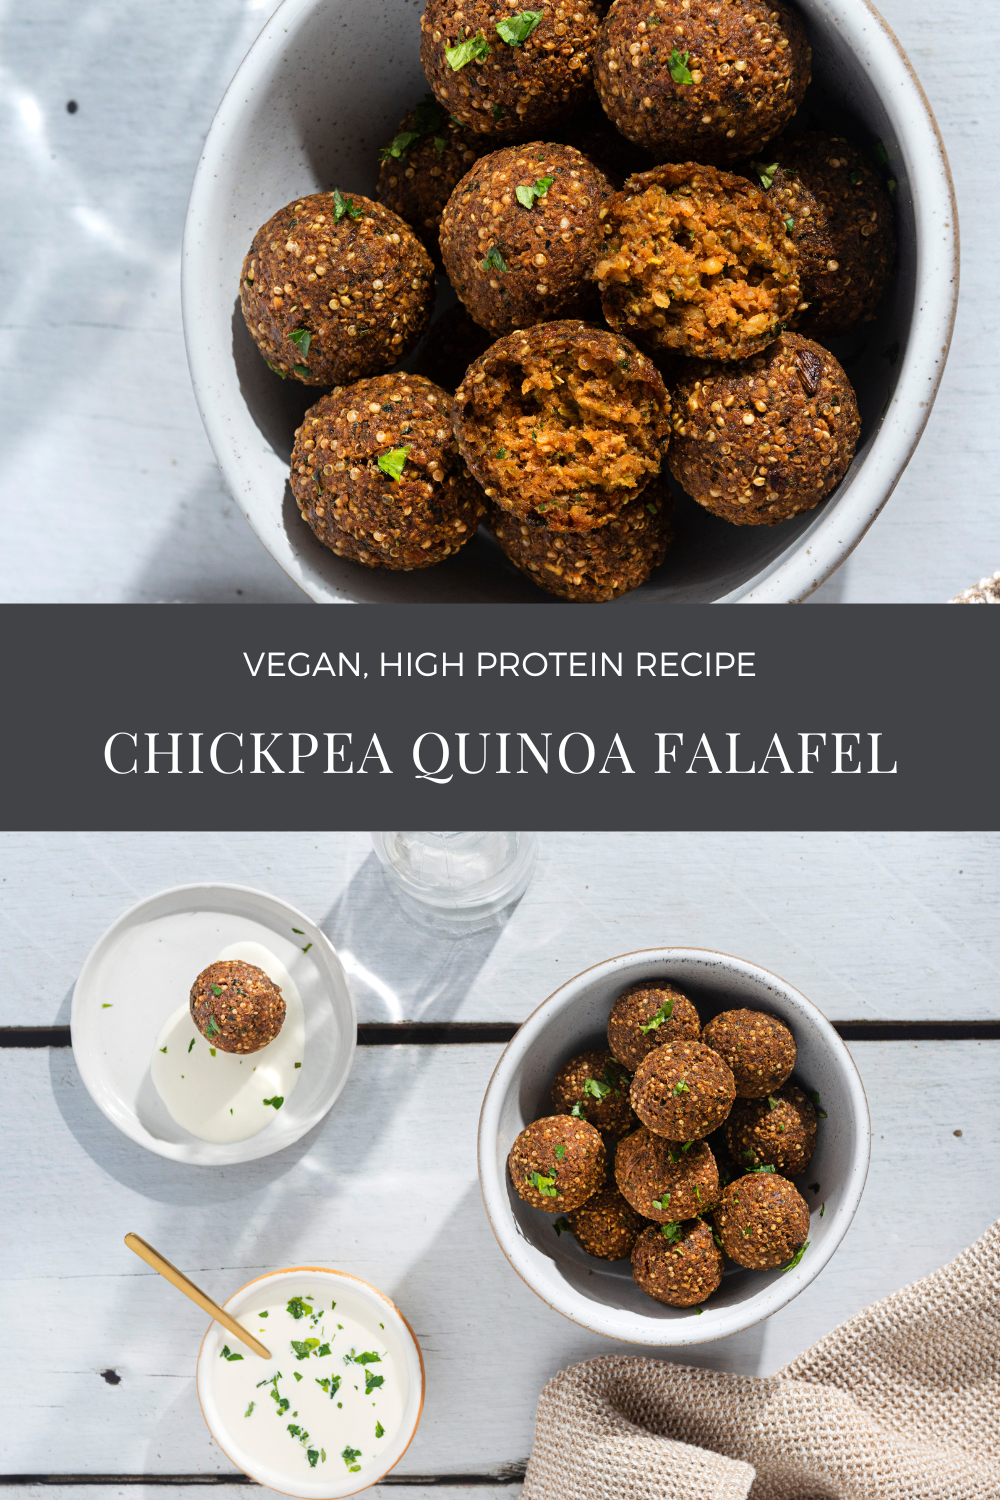 Chickpea quinoa falafel Recipe